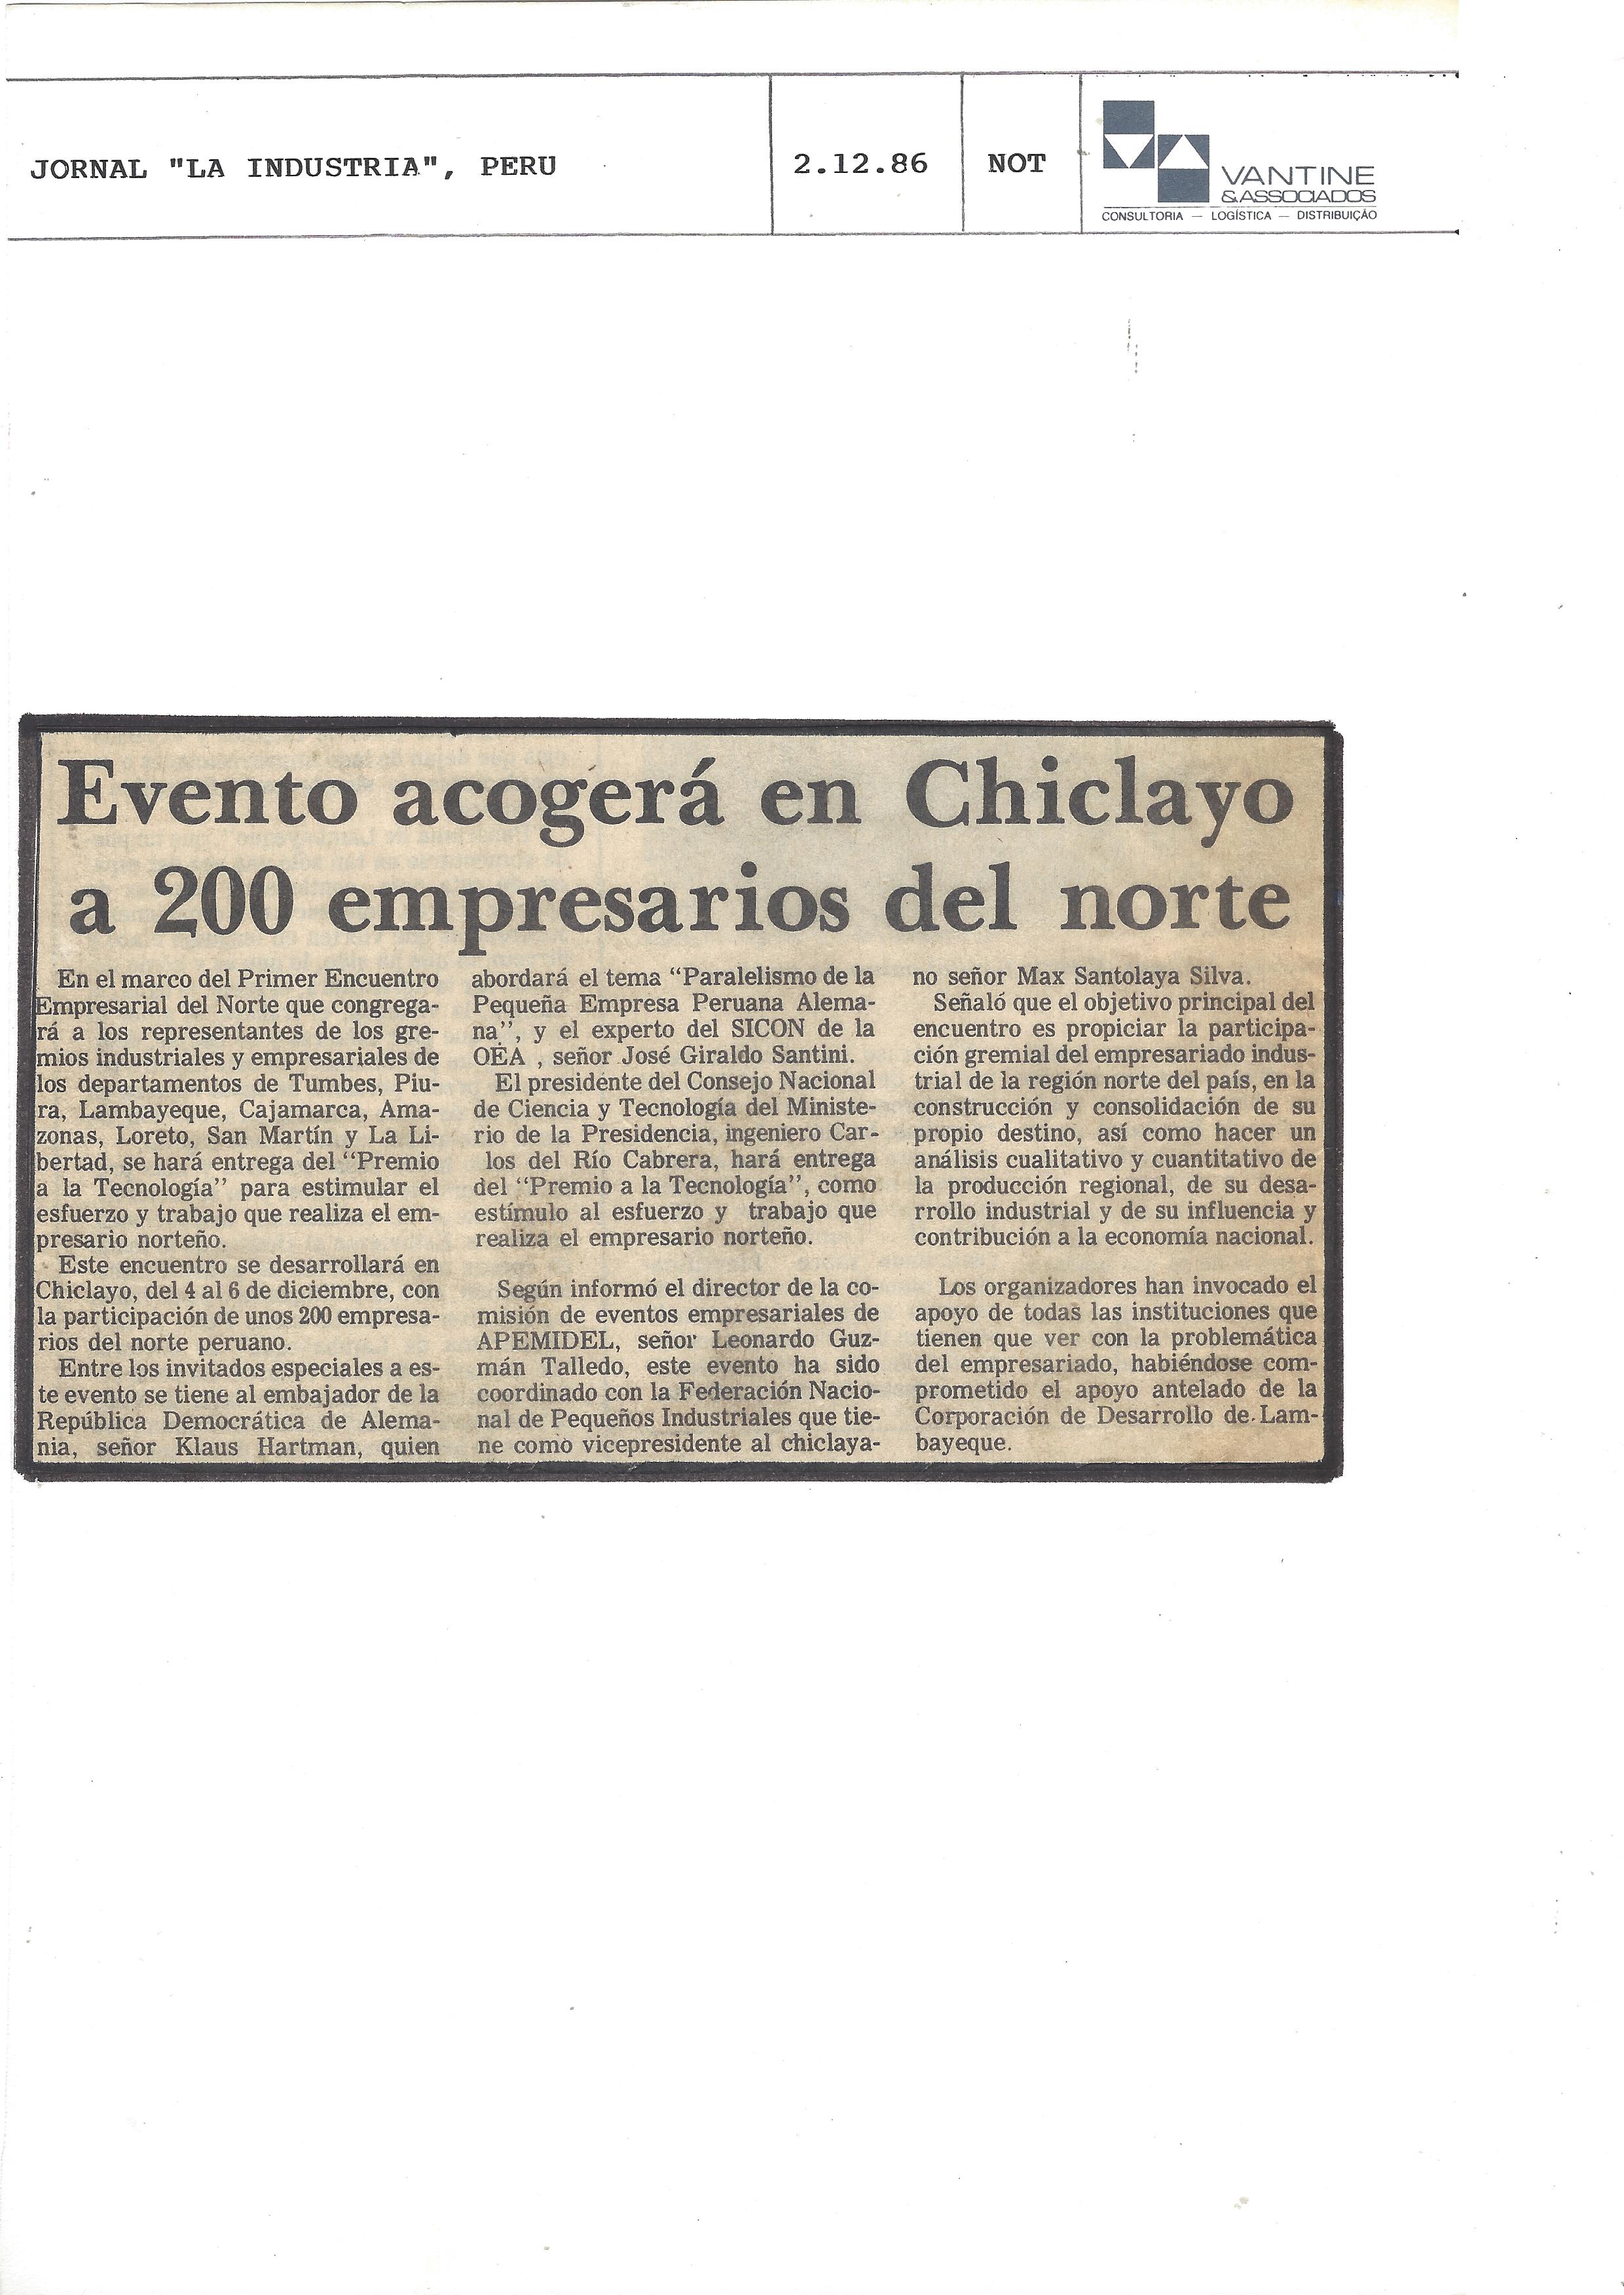 evento acogerá en chilclayo a 200 empresarios del norte – jornal La Industria, Peru